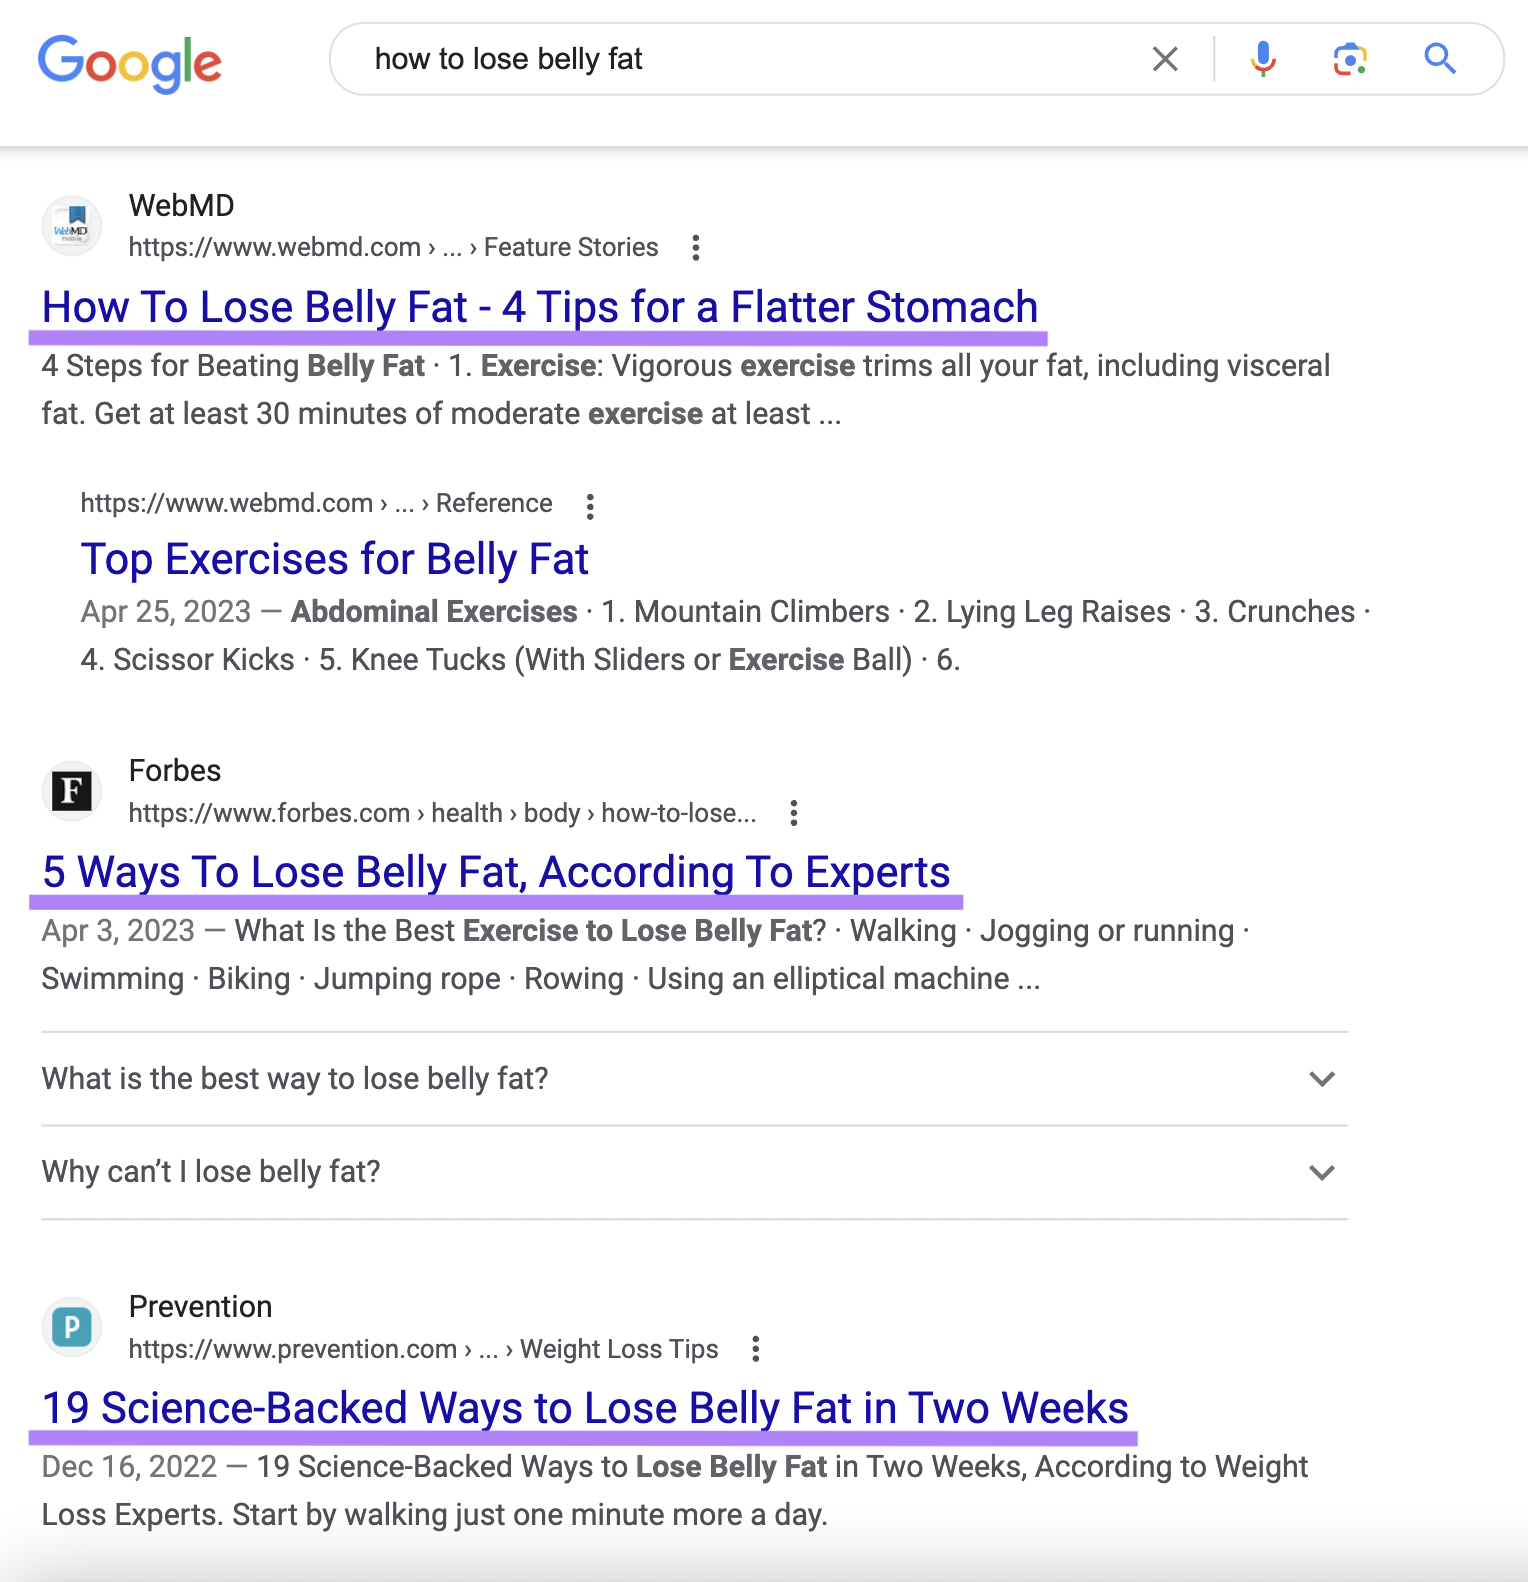 Résultats de recherche Google pour 